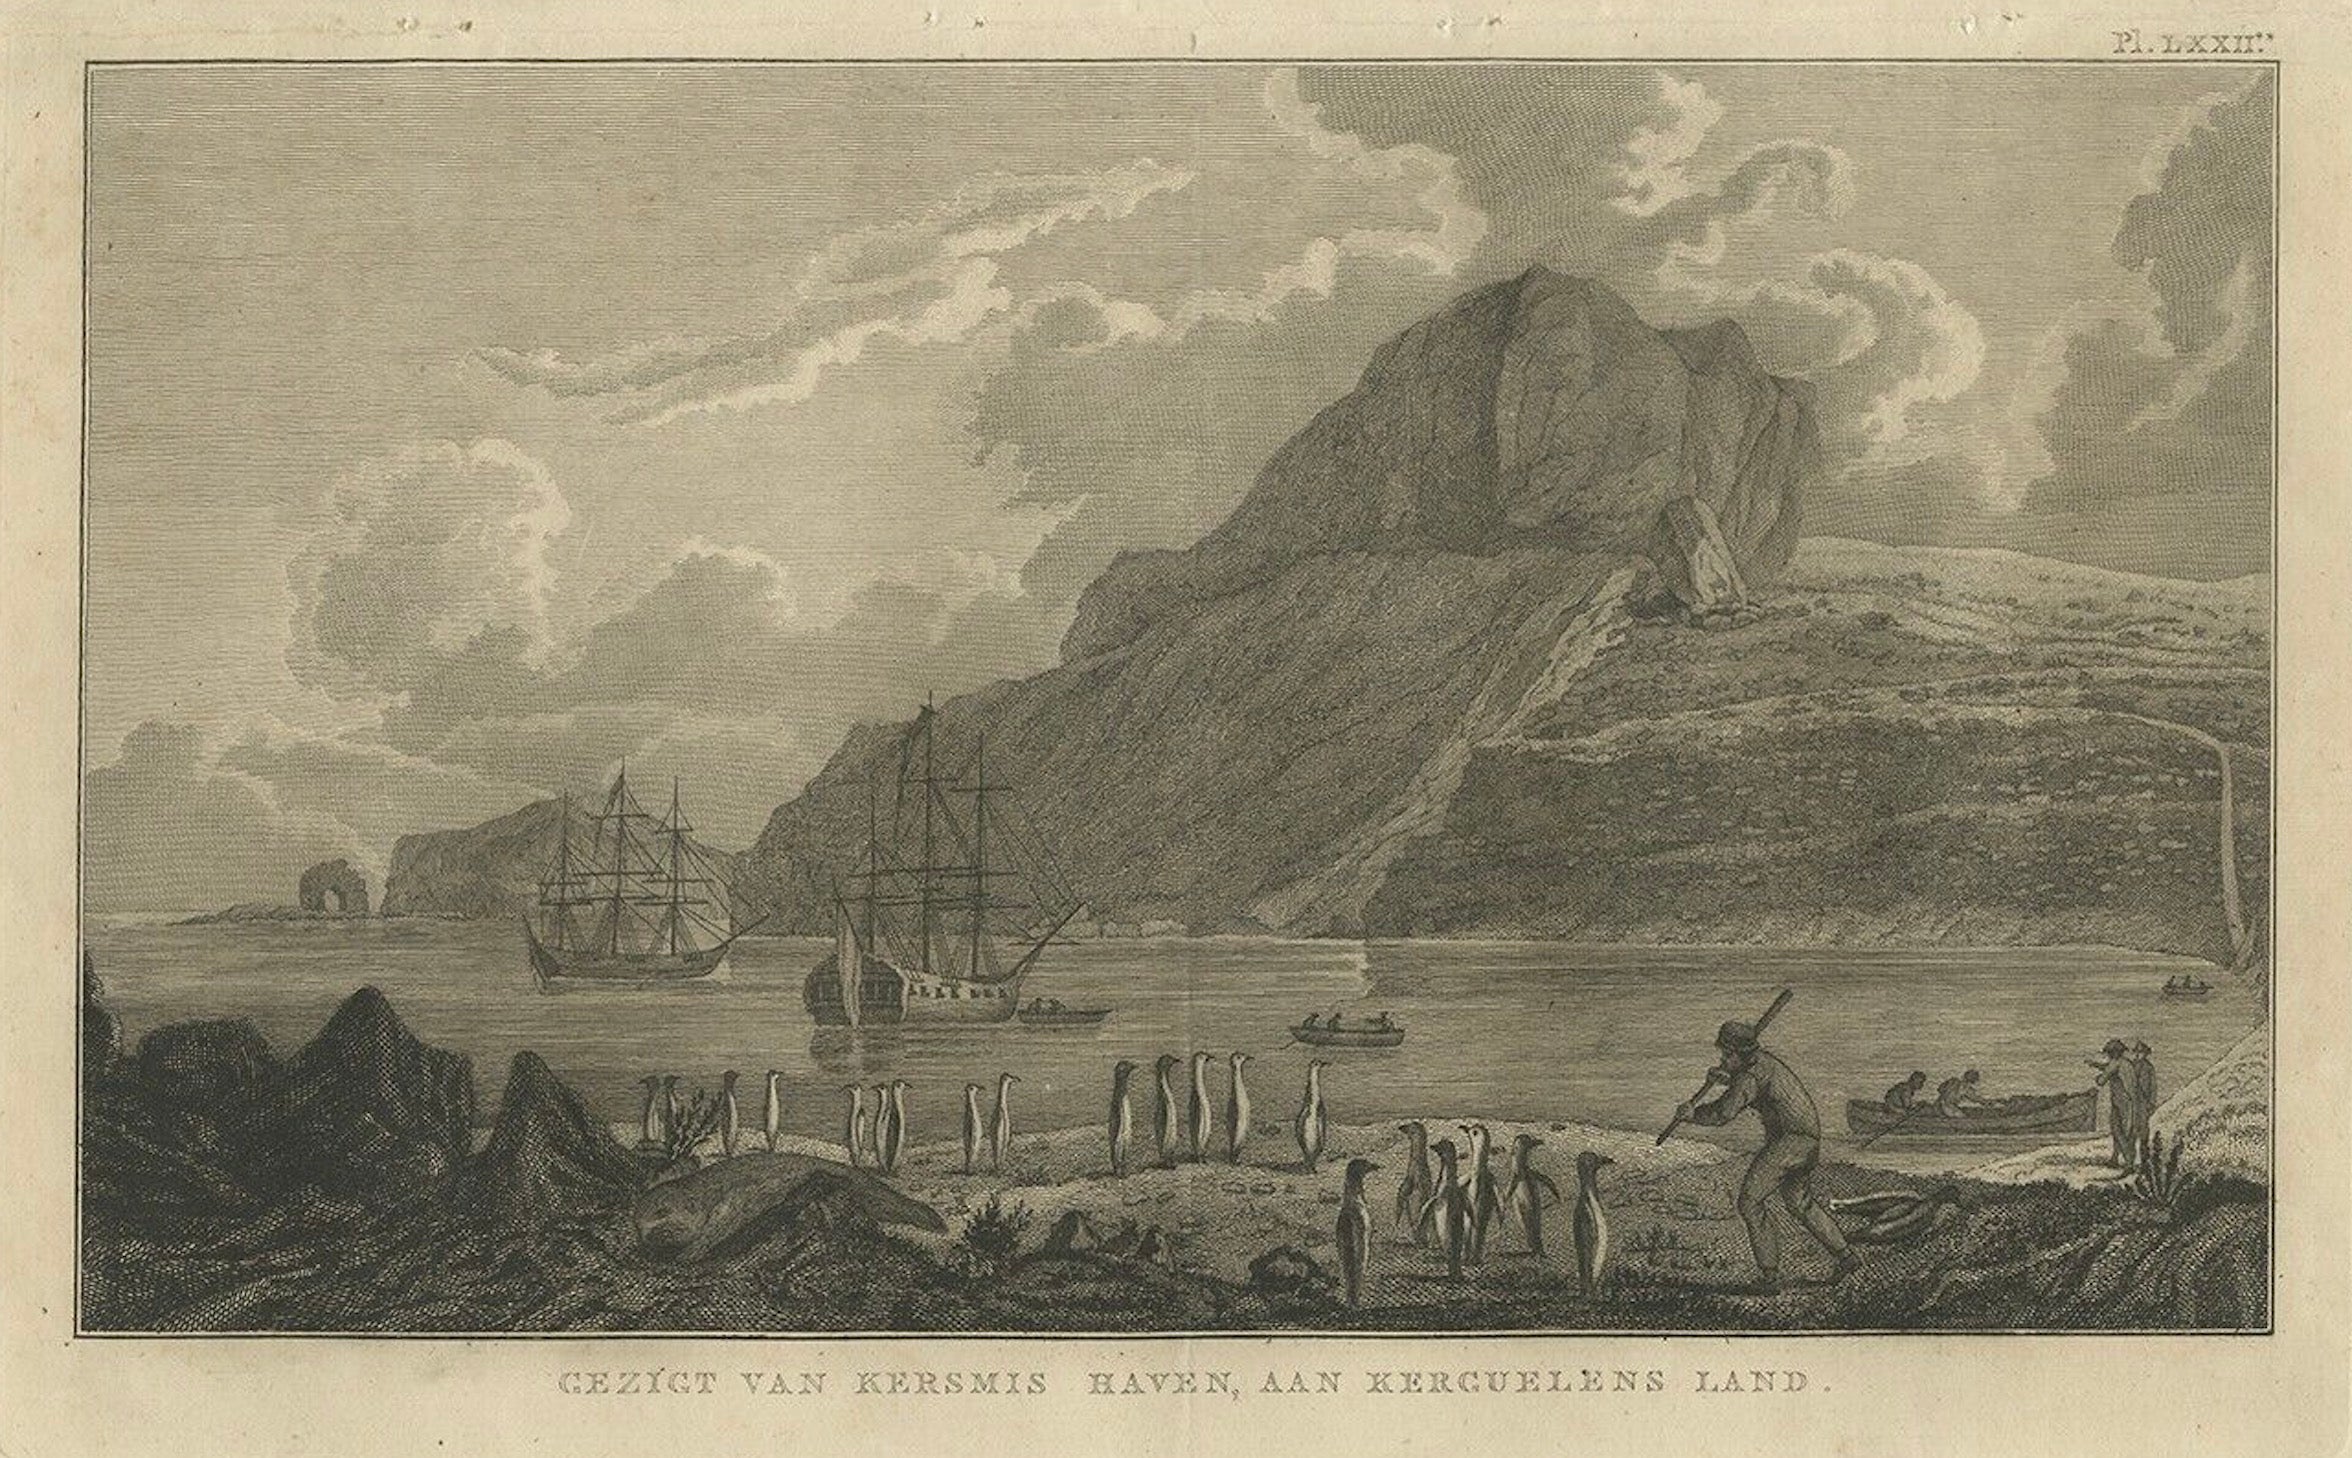 Antiker Druck der Kerguelen-Inseln oder der Desolationsinseln von Cook, 1803